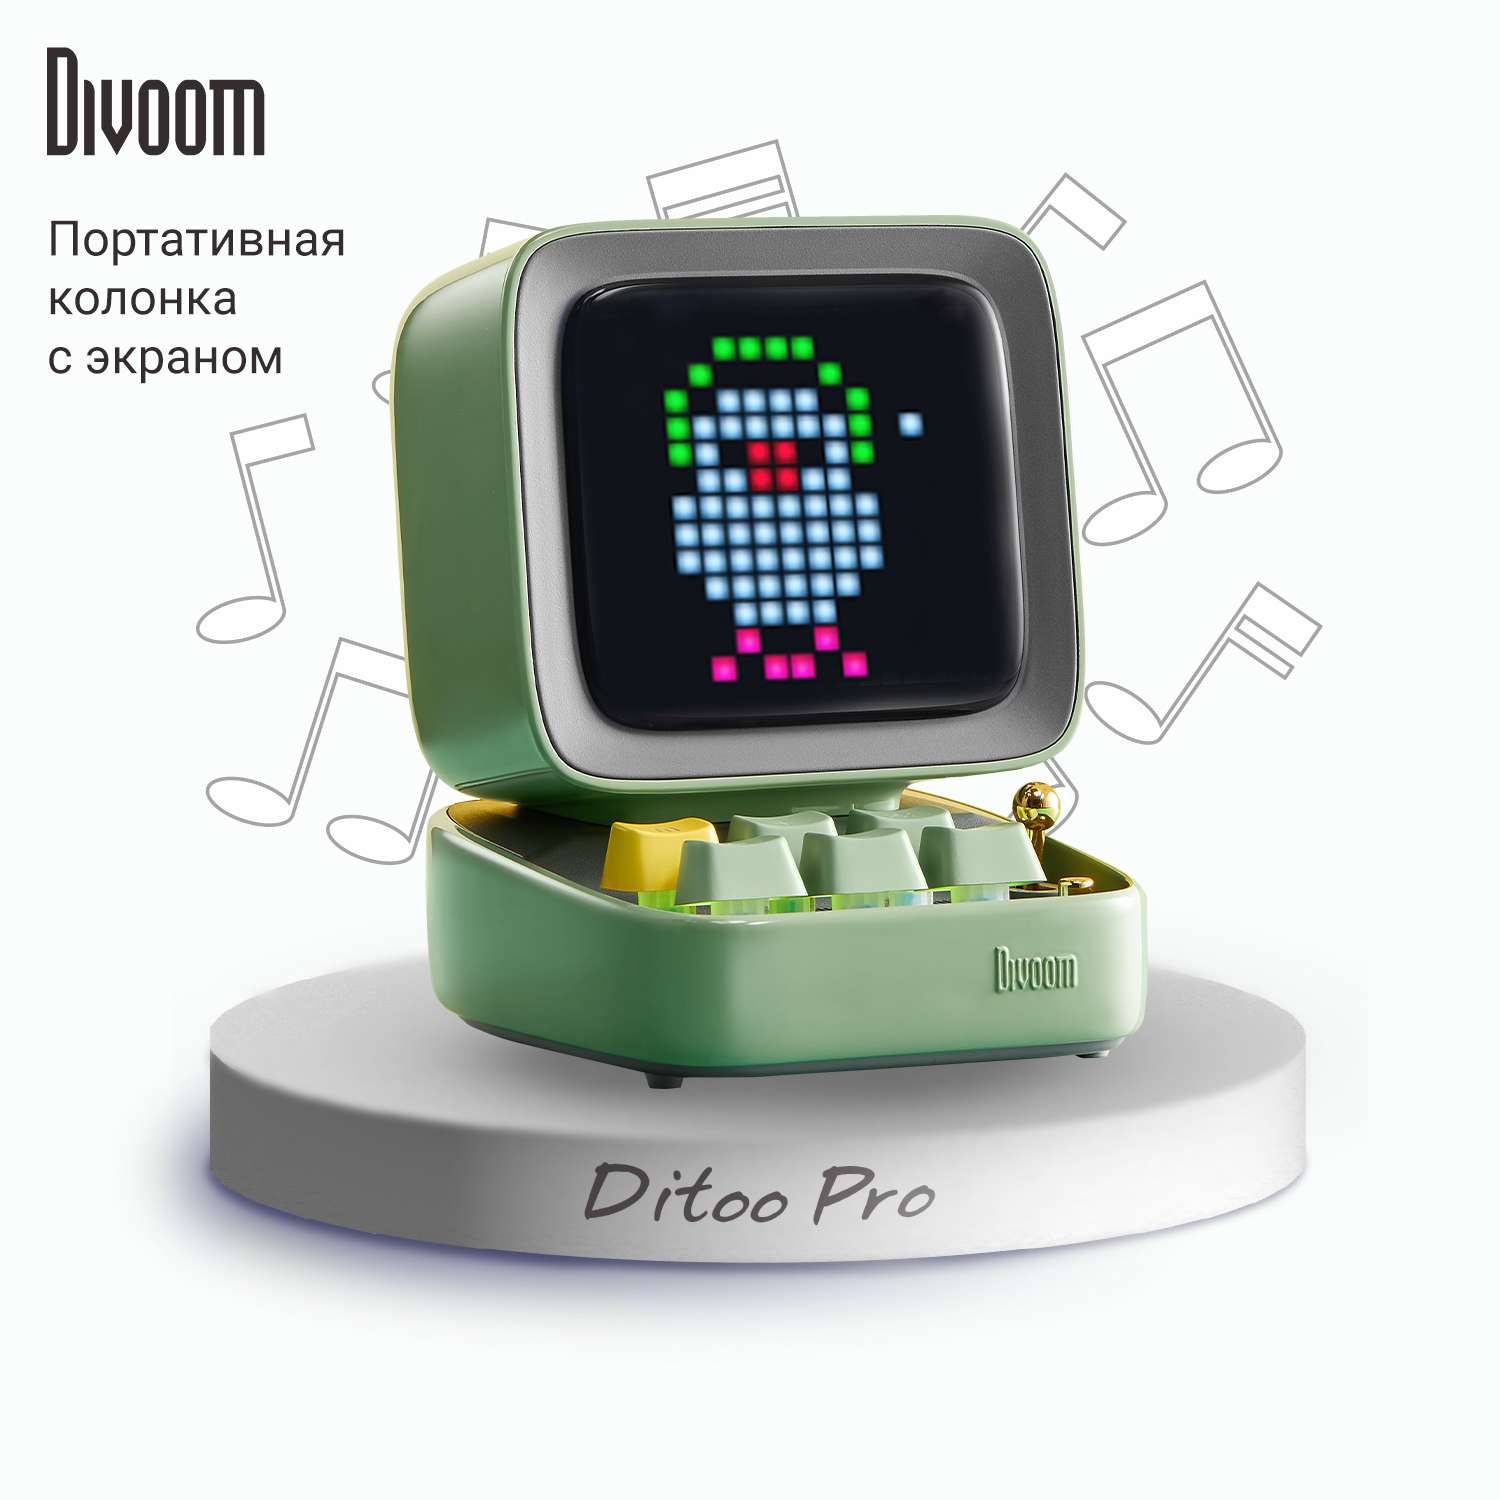 Беспроводная колонка DIVOOM портативная Ditoo Pro зеленая с пиксельным LED-дисплеем - фото 1